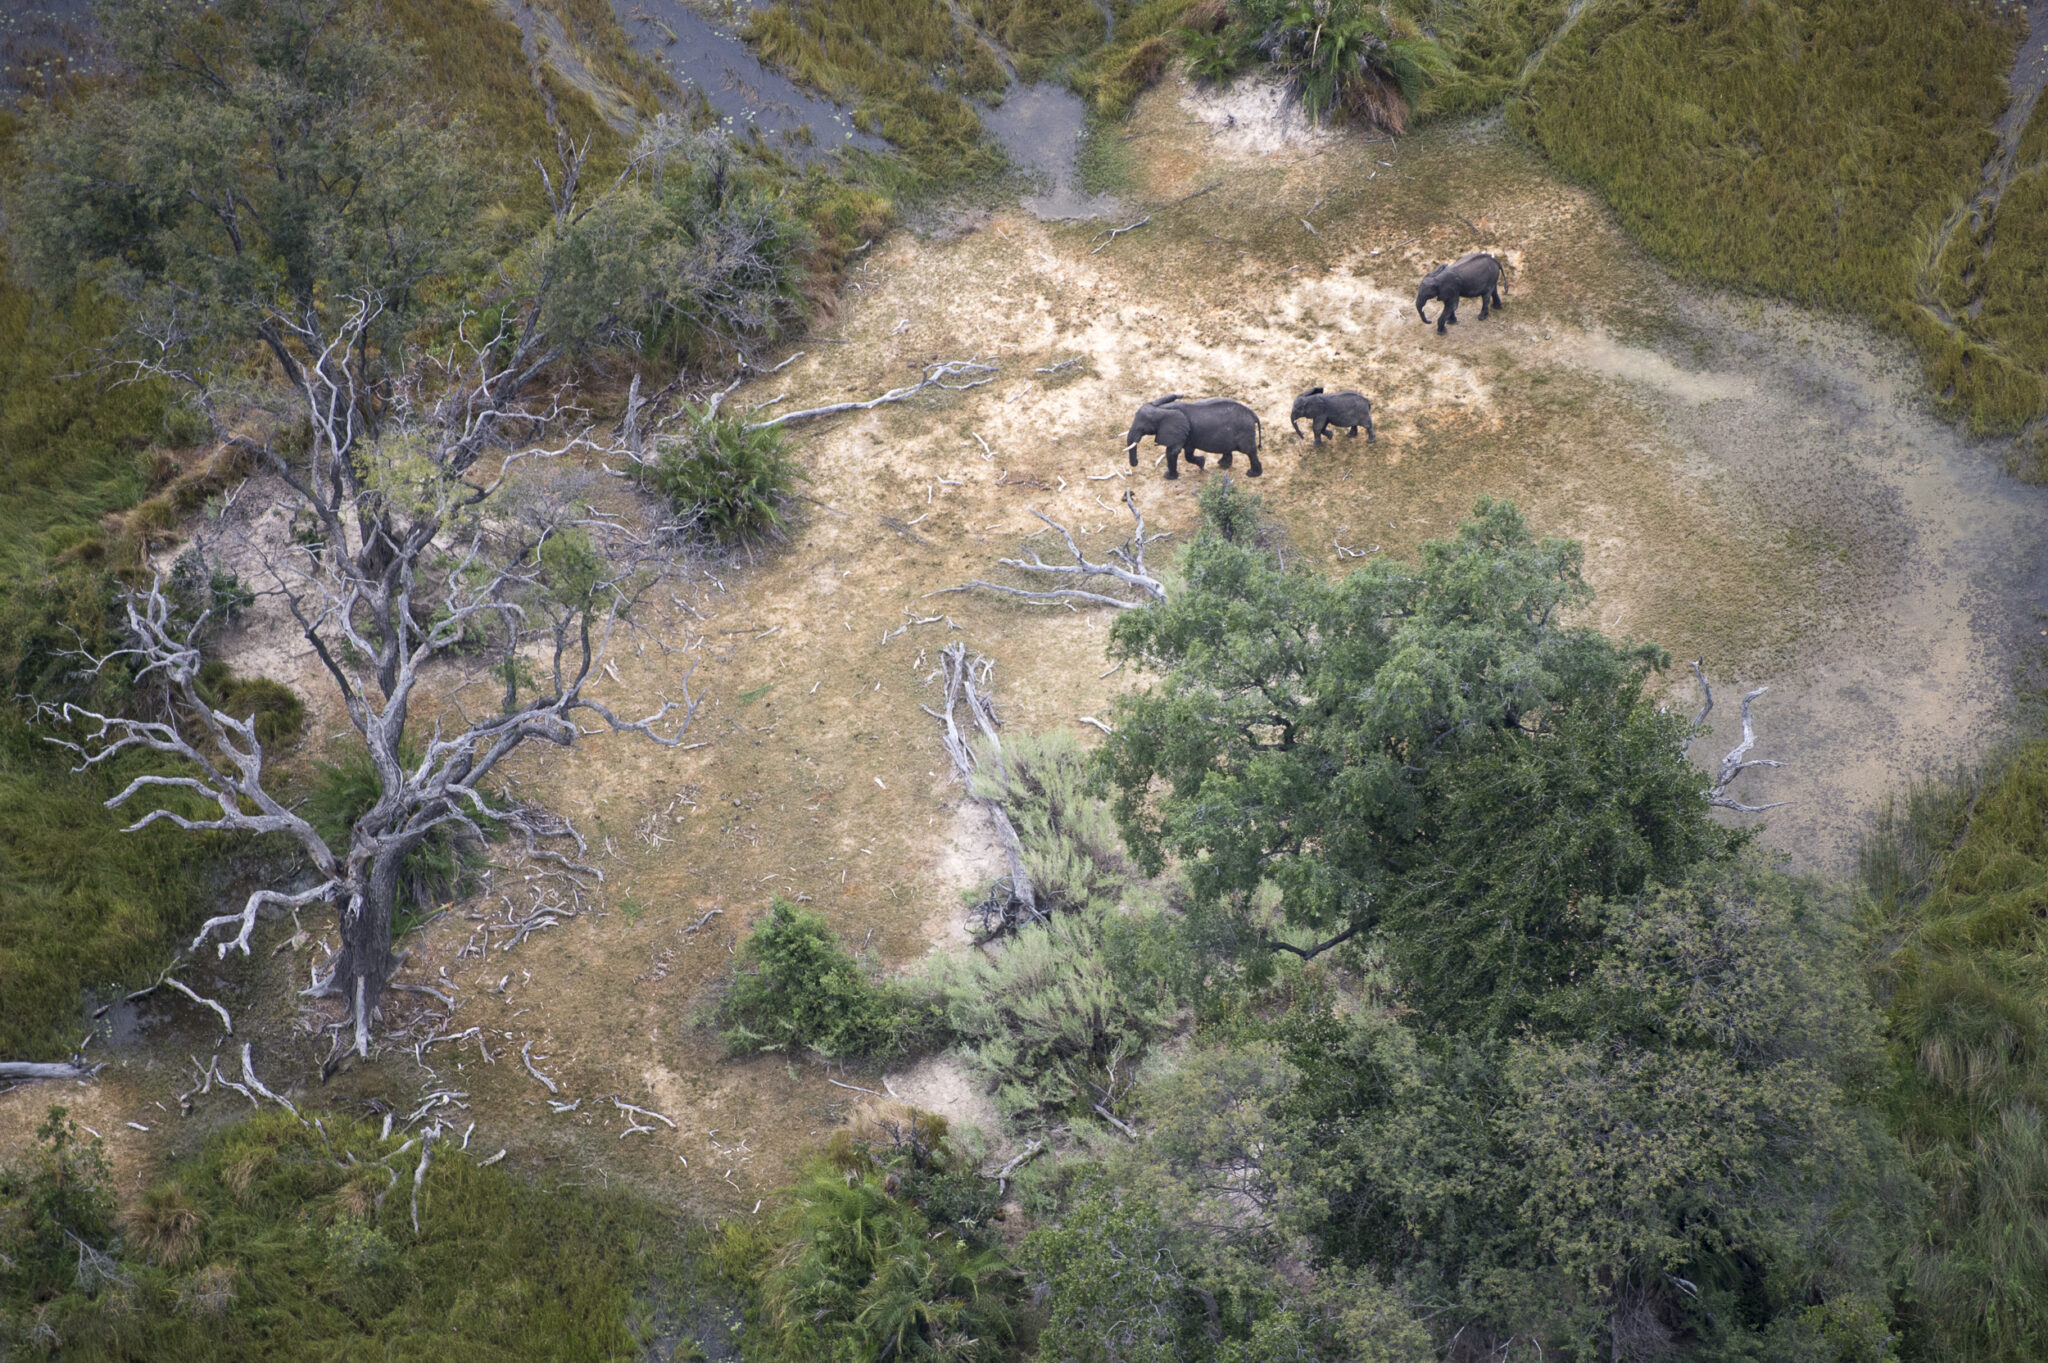 Elephants In The Okavango Delta In Botswana